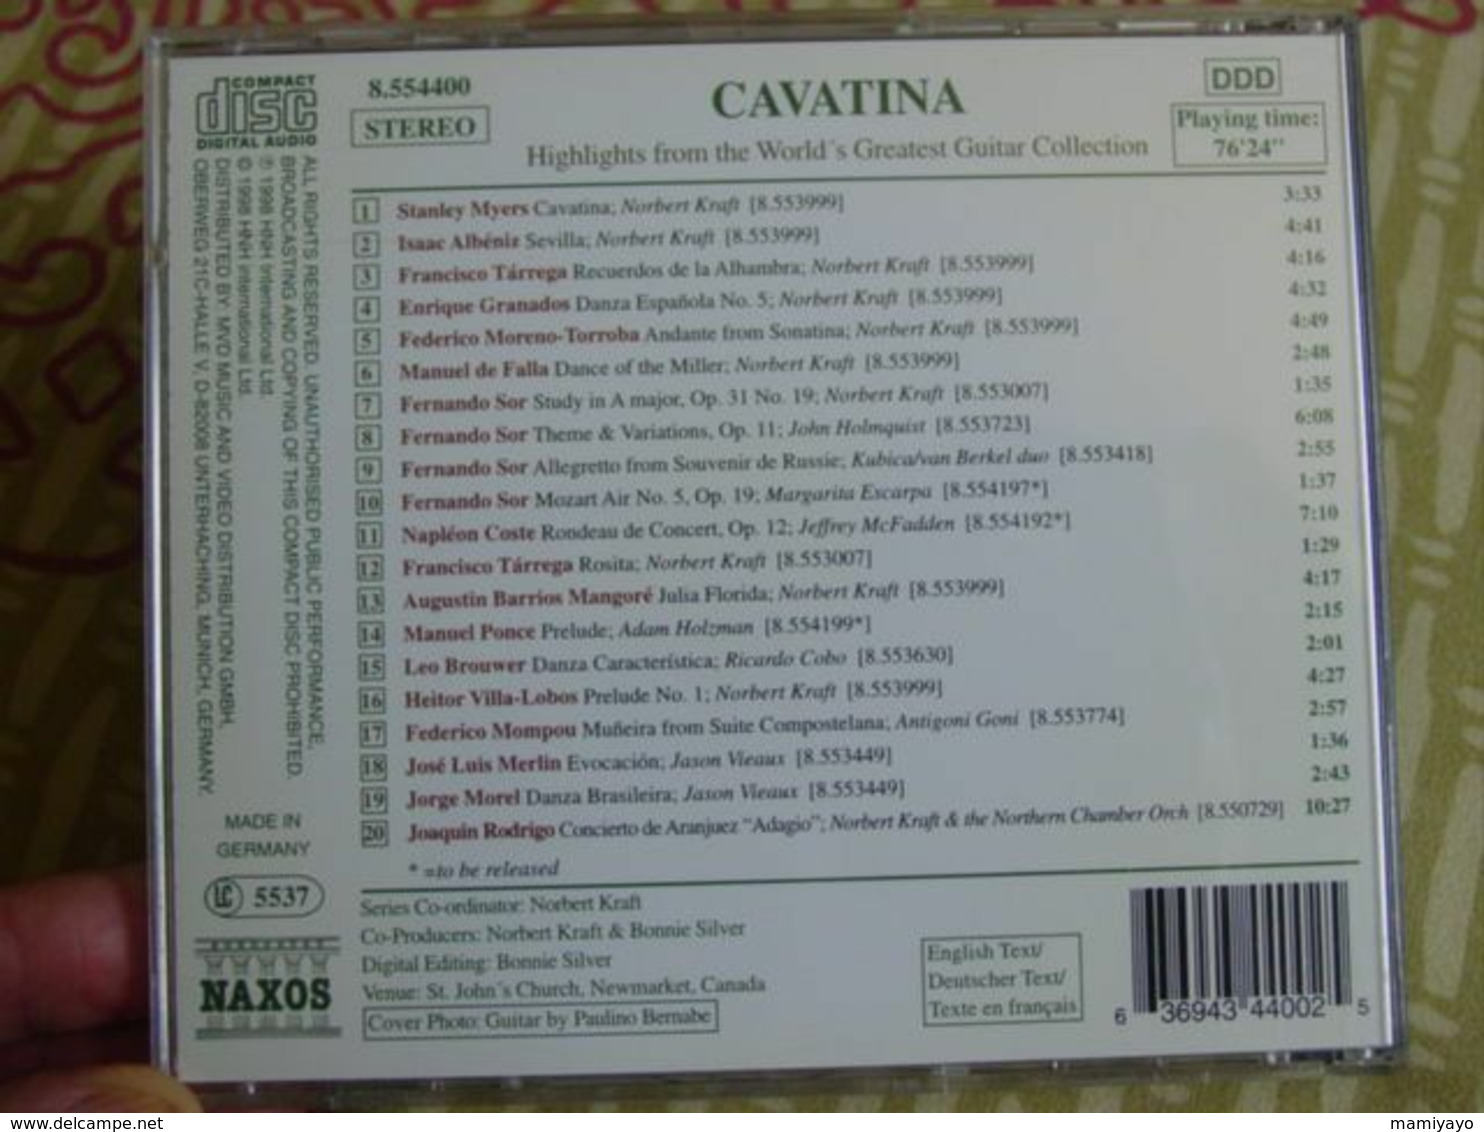 Classique - Guitar Collection * / CAVATINA -Grands Succès De La Guitare . - Instrumentaal